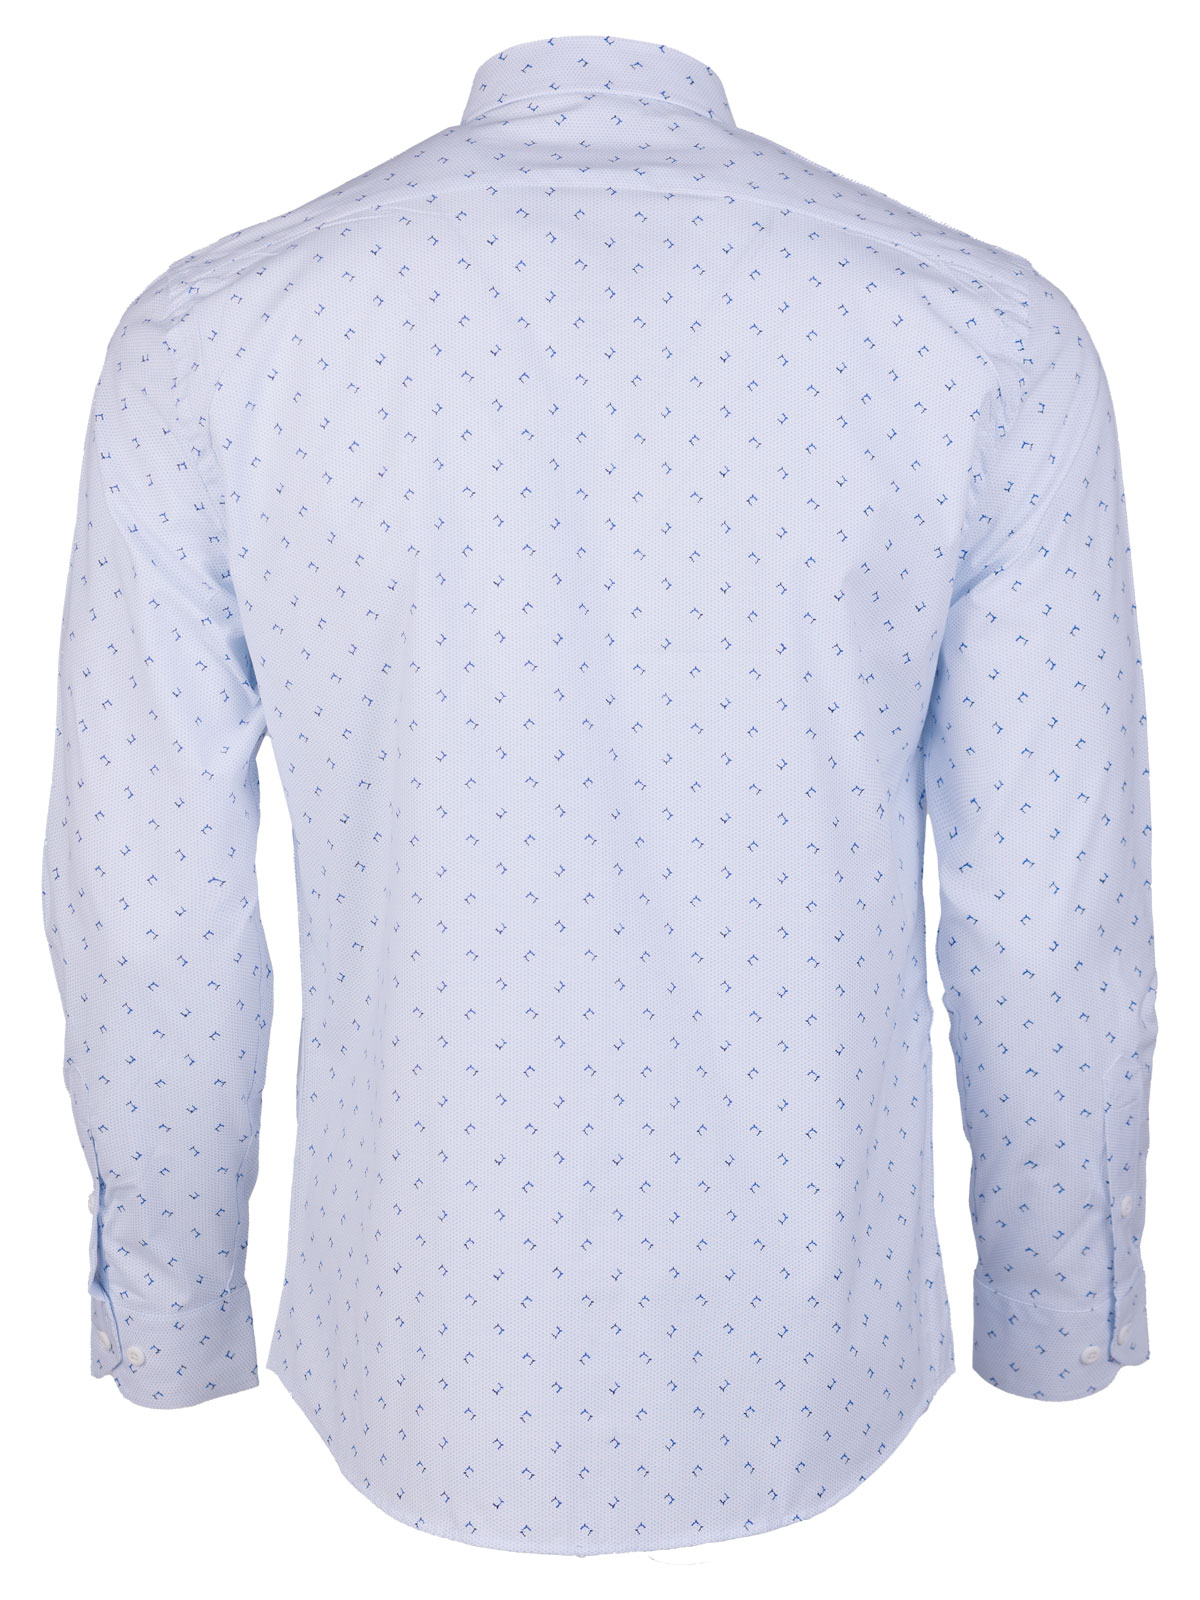 Λευκό πουκάμισο με γαλάζιες φιγούρες - 21601 € 44.43 img2